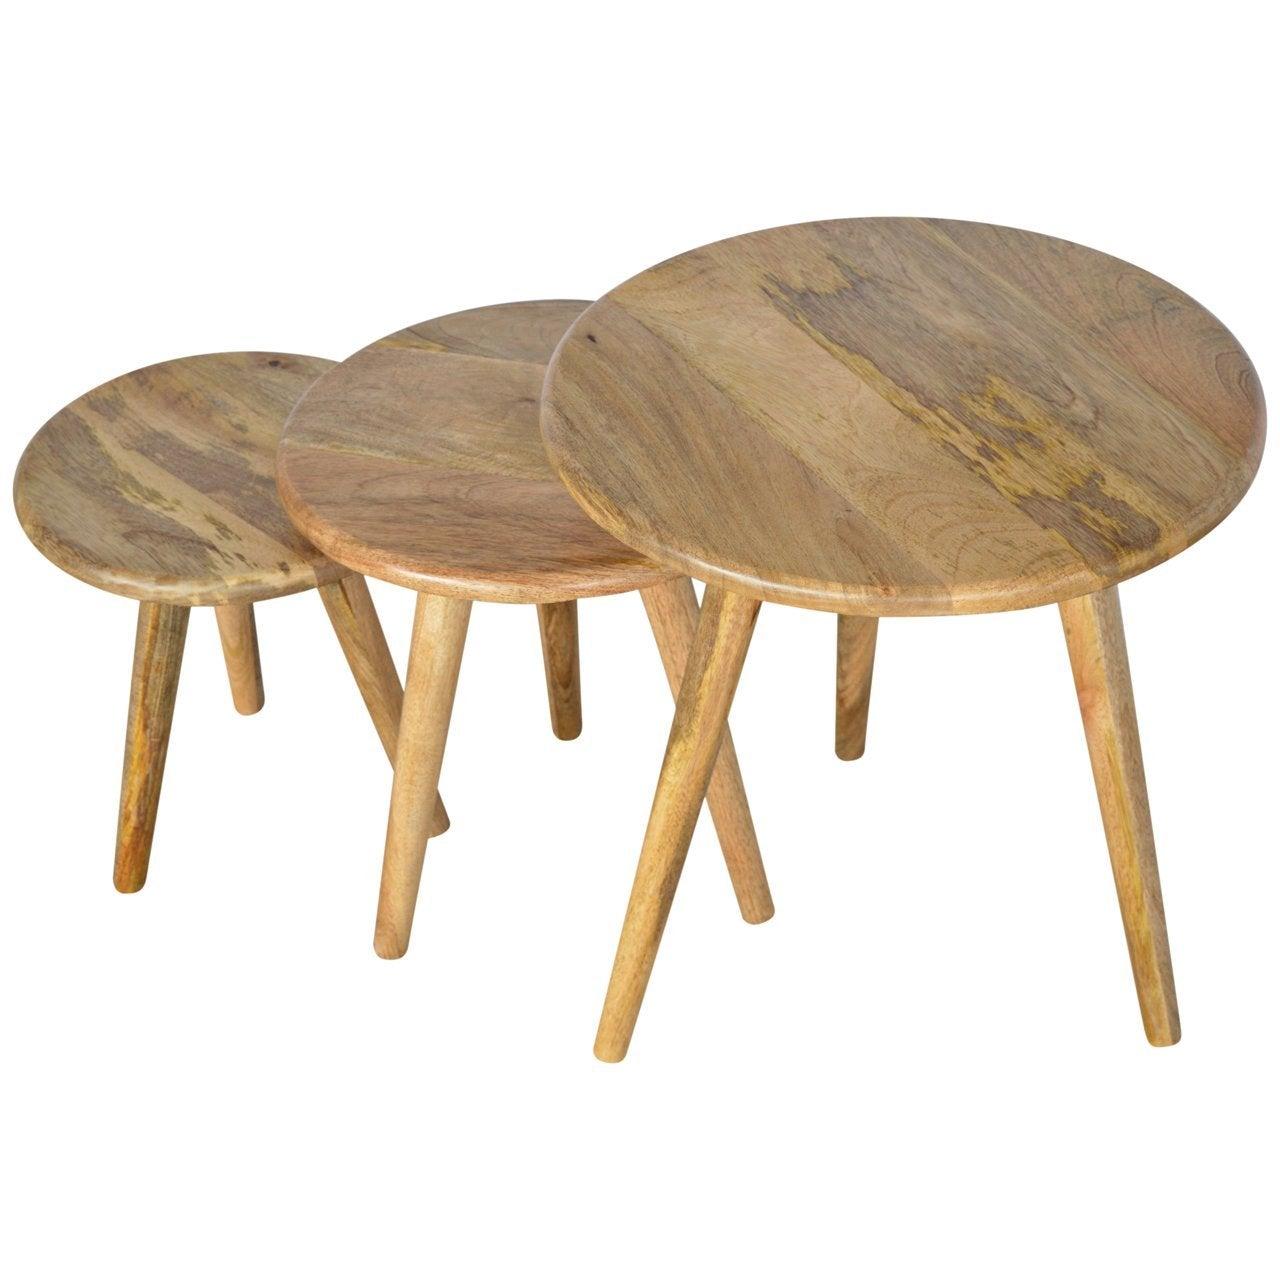 Nordic style stool set of 3 - crimblefest furniture - image 4